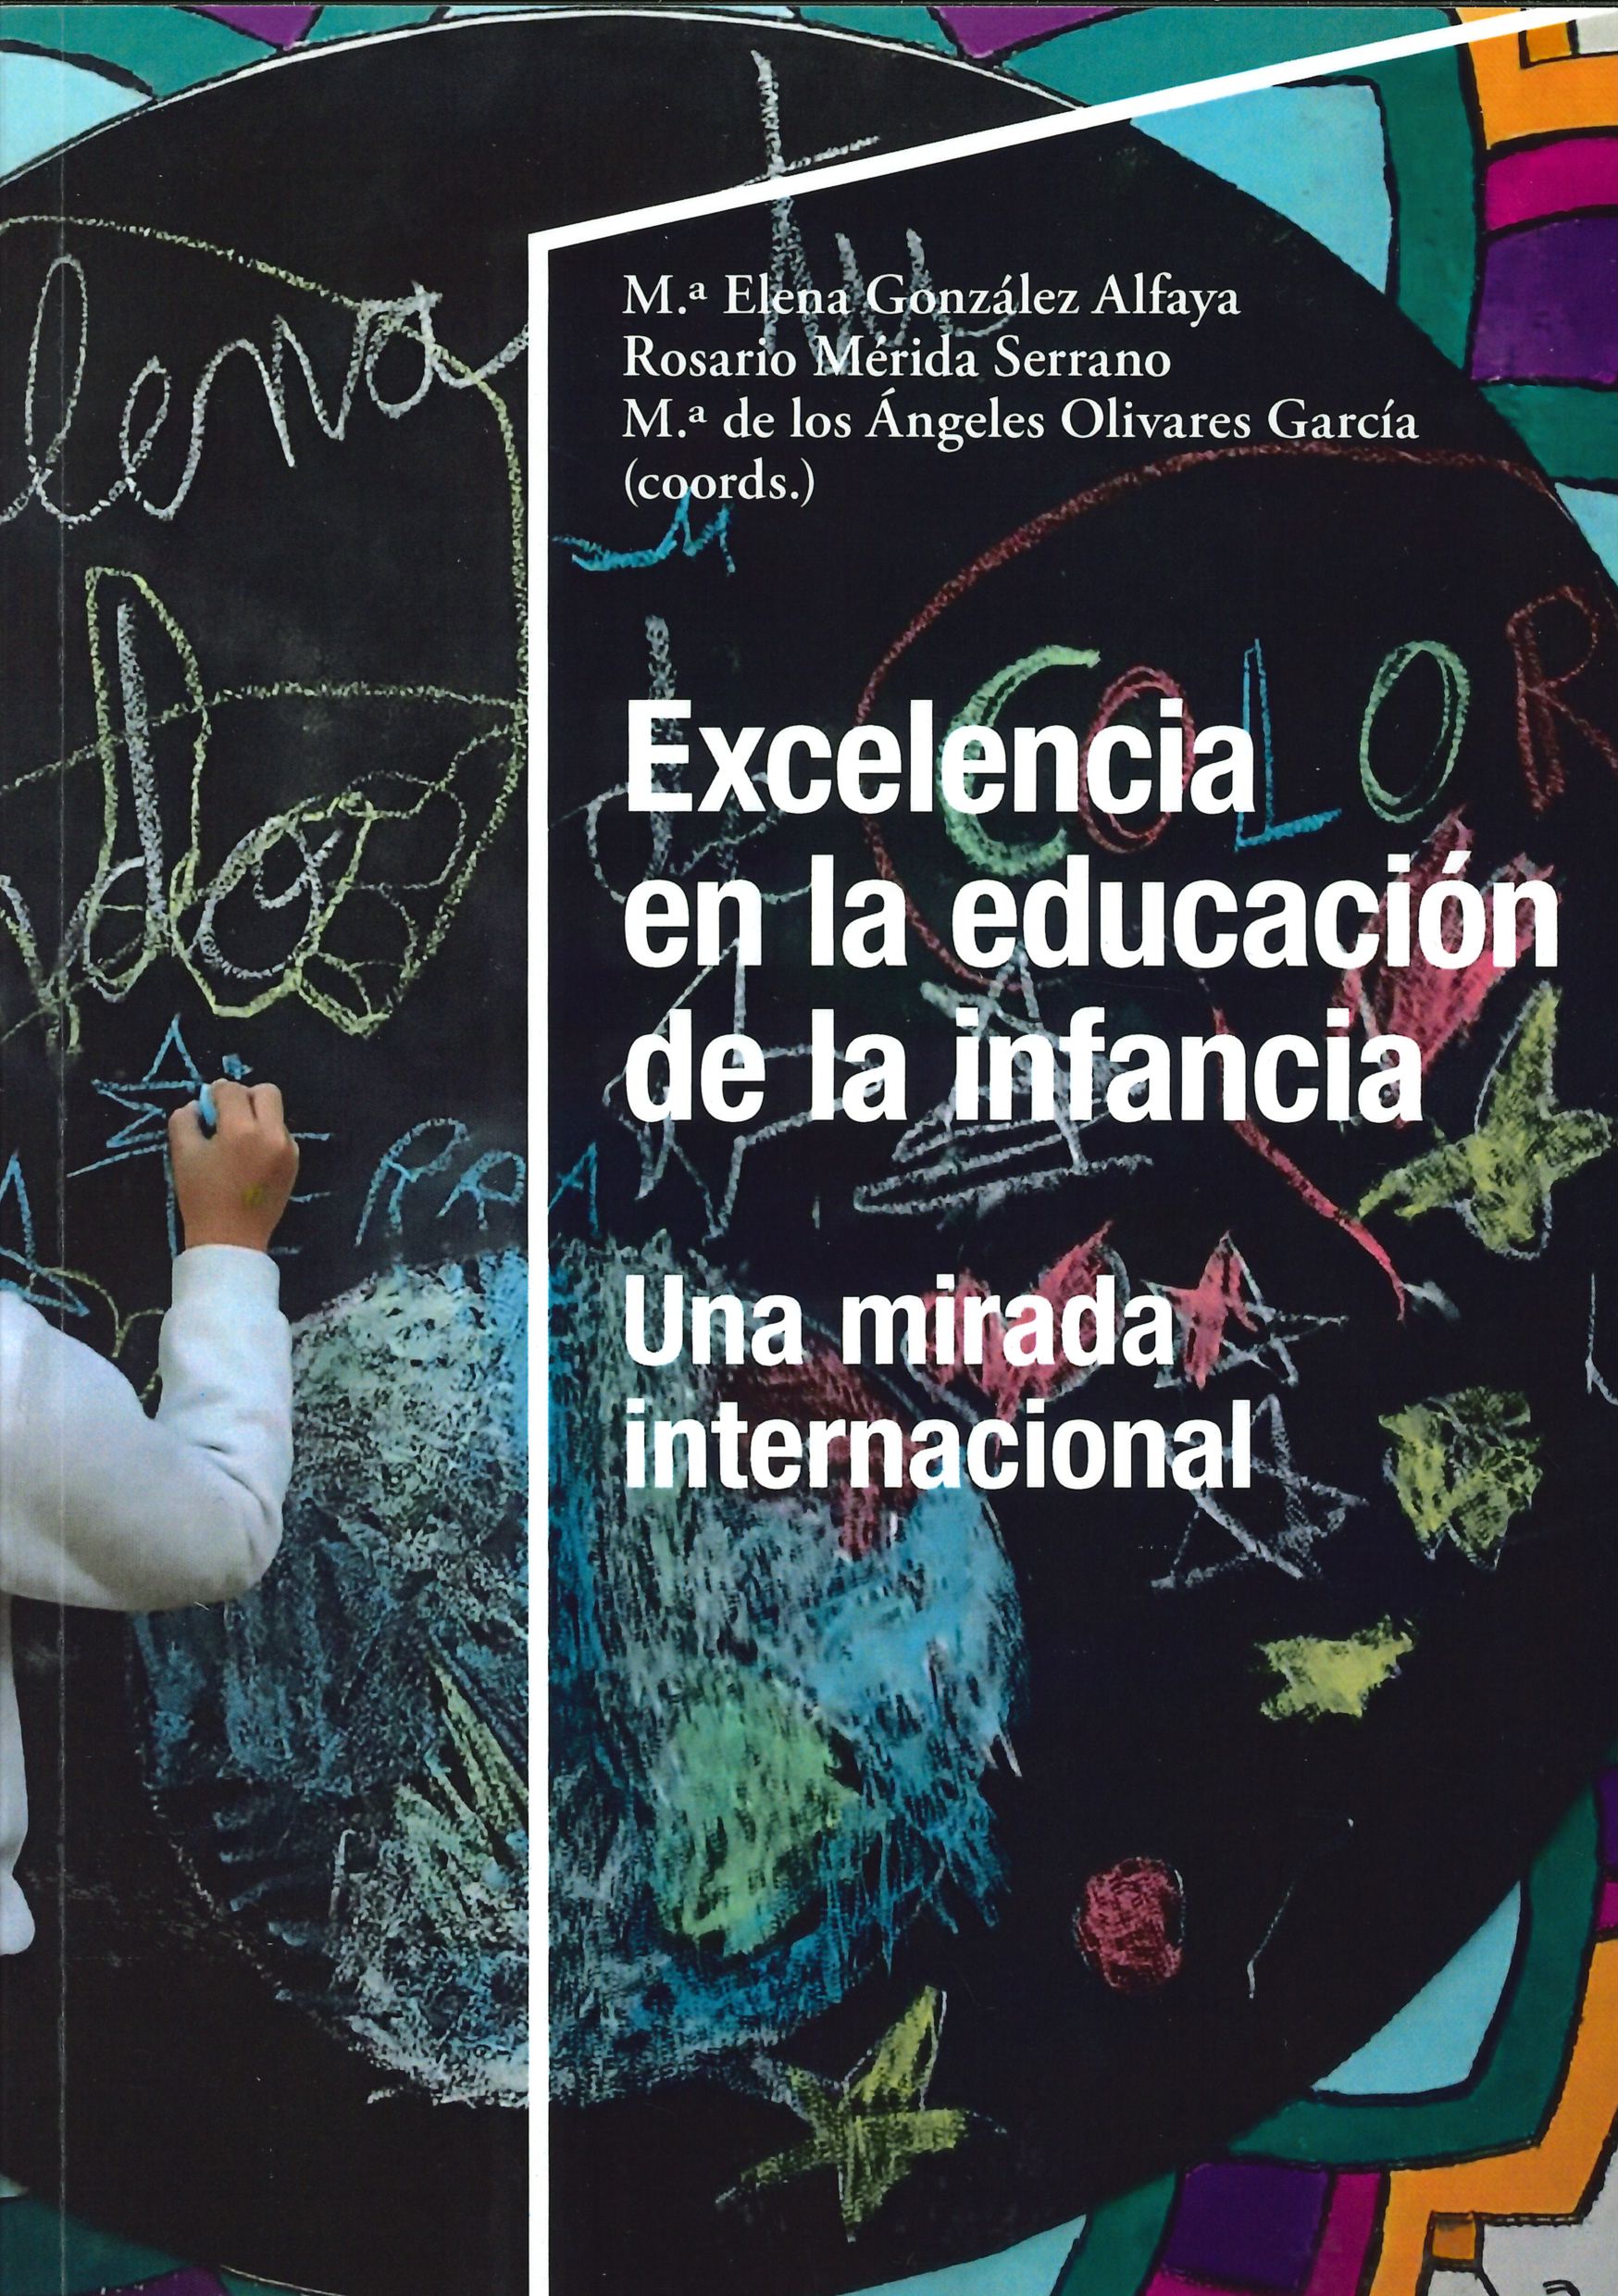 Imagen de portada del libro Excelencia en la educación de la infancia